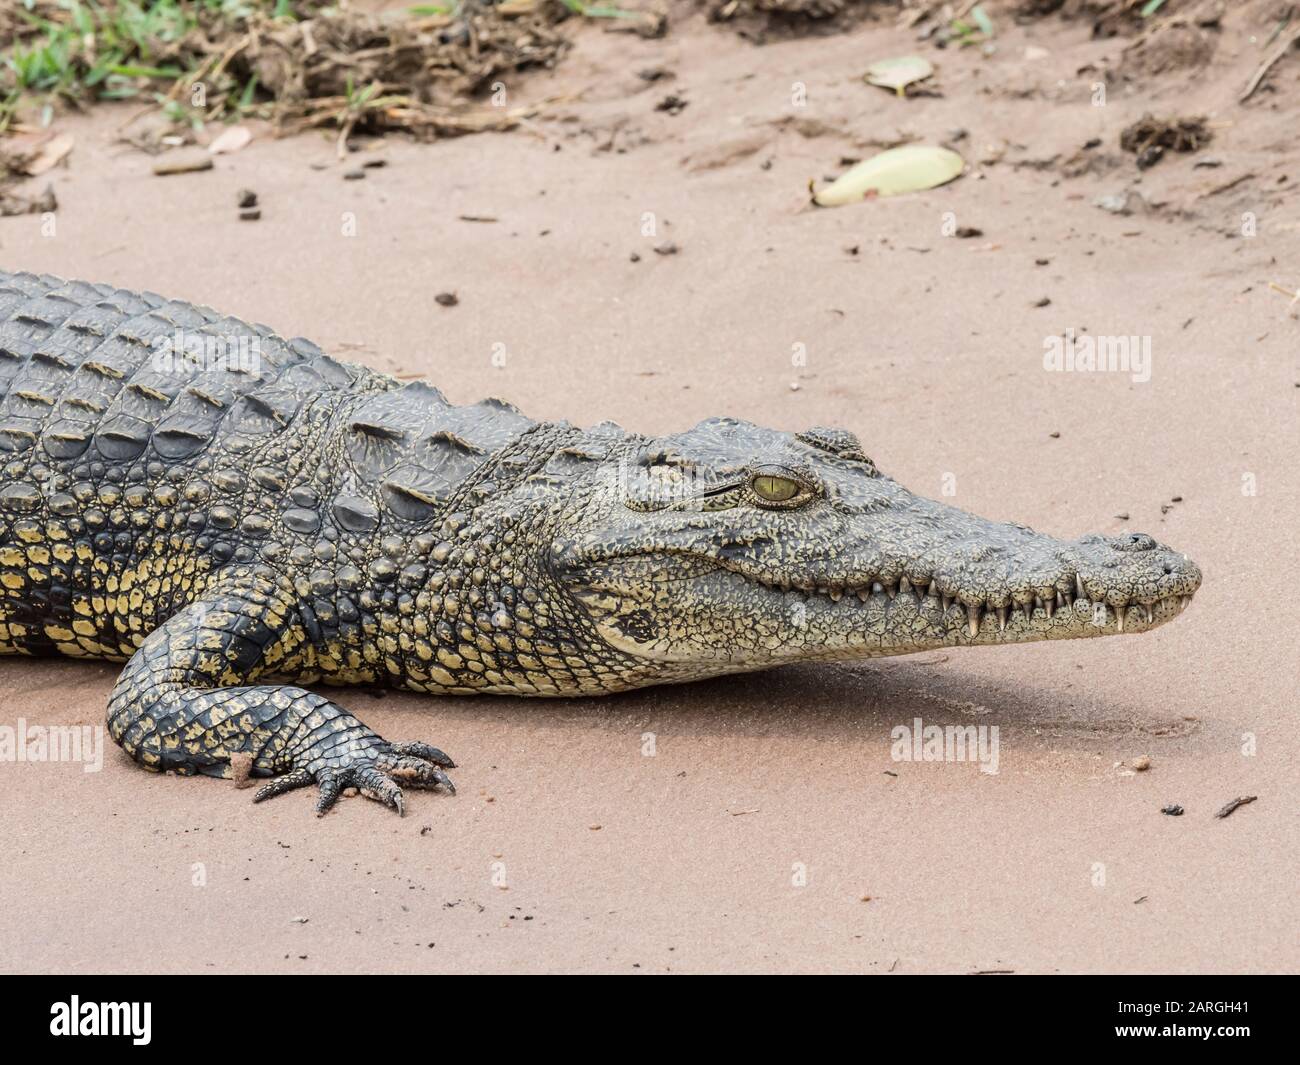 Un cocodrilo adulto del Nilo (Crocodylus niloticus) en el Parque Nacional de Chobe, Botswana, África Foto de stock